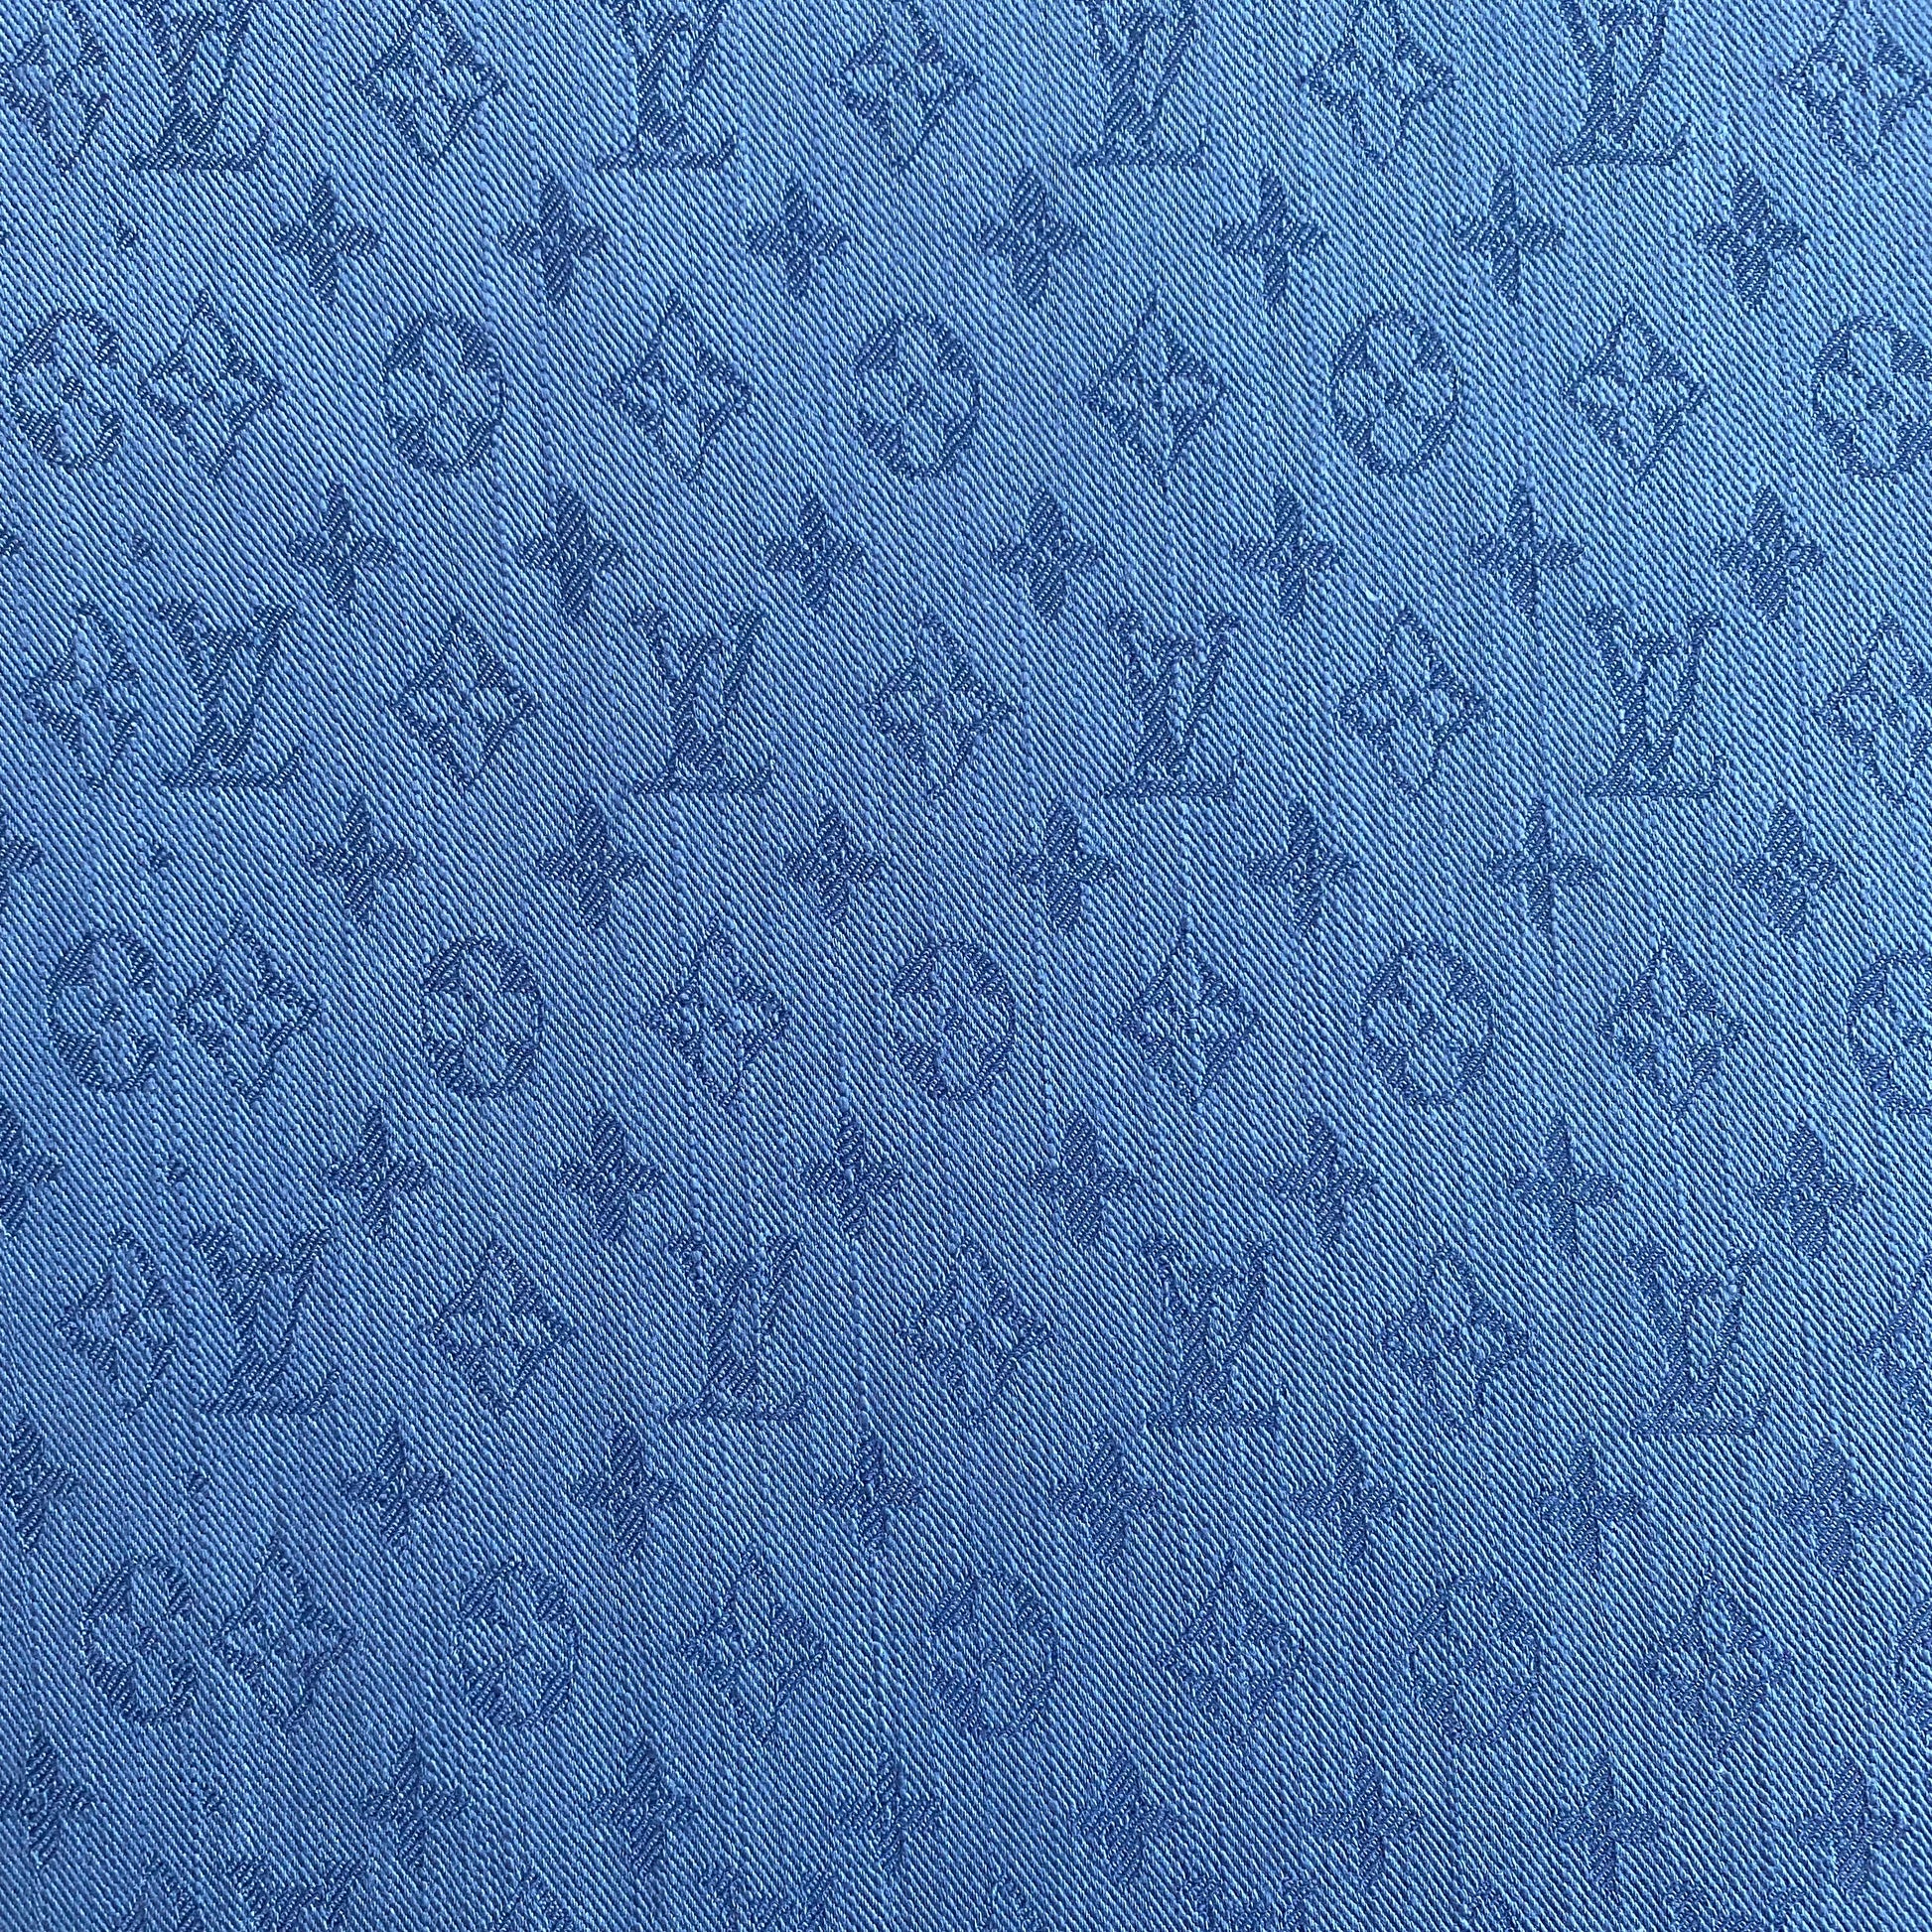 blue lv fabric such as denim louis vuitton denim fabric blue